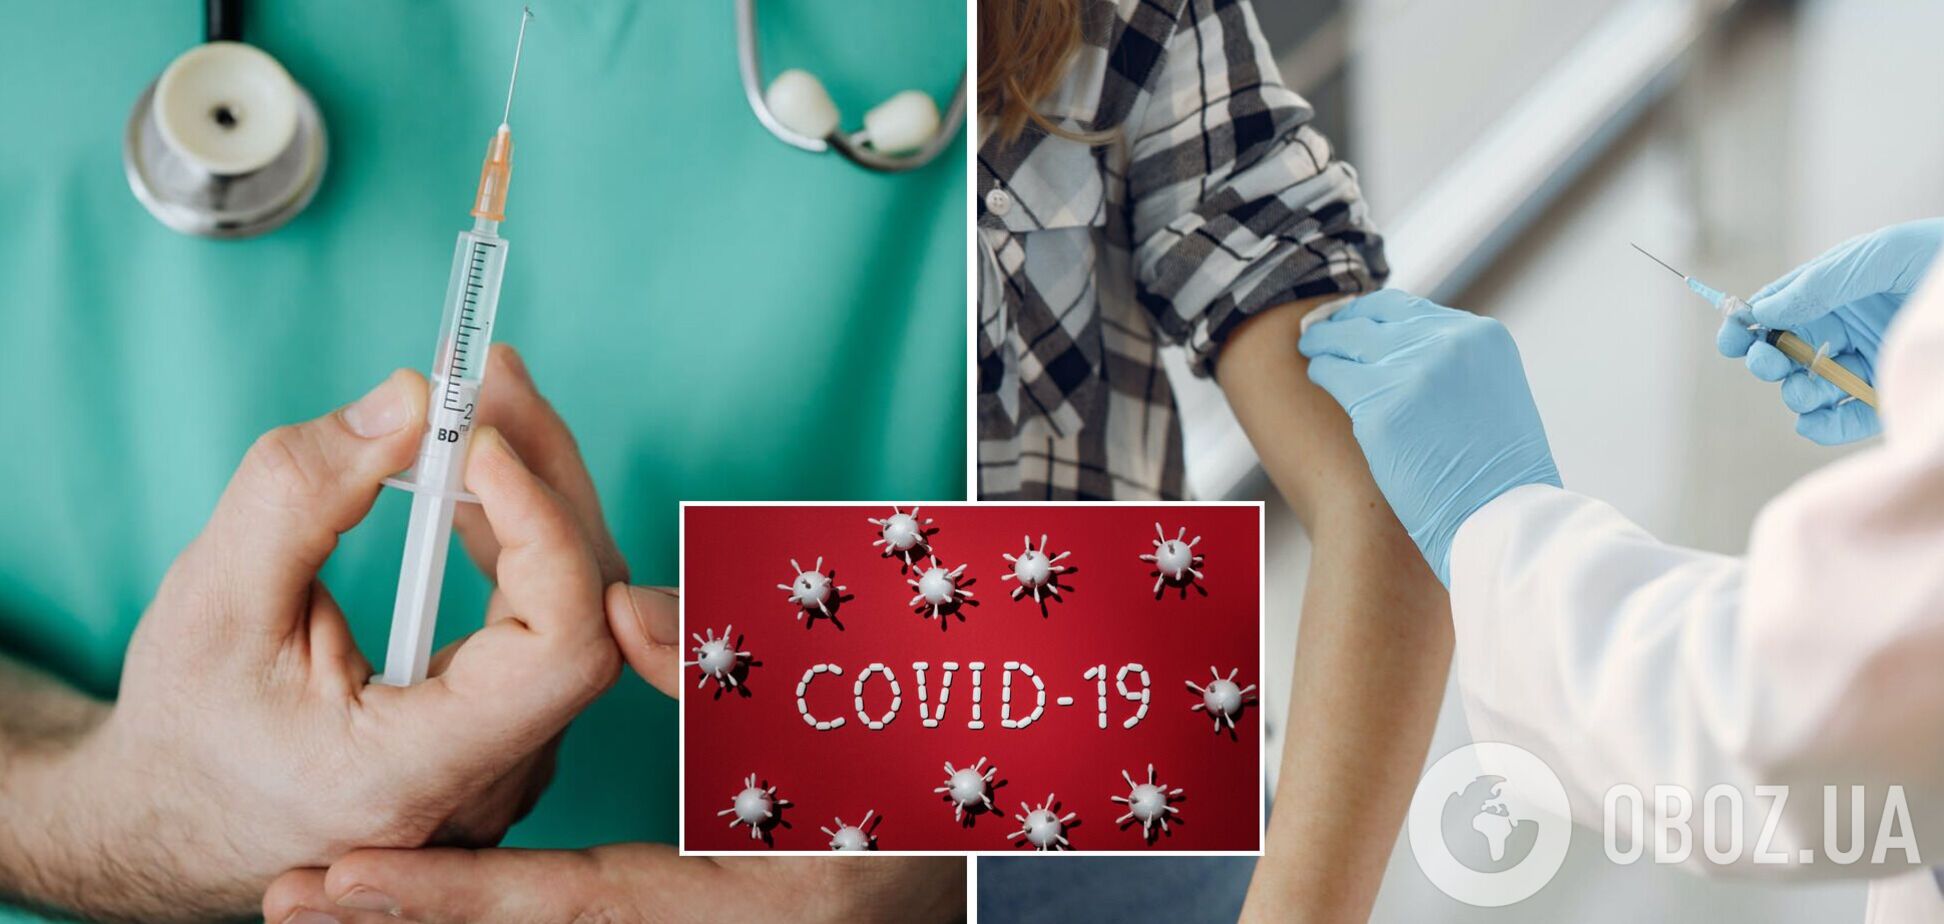 Эксперты оценили вероятность введения обязательной вакцинации всего населения от COVID-19 в Украине